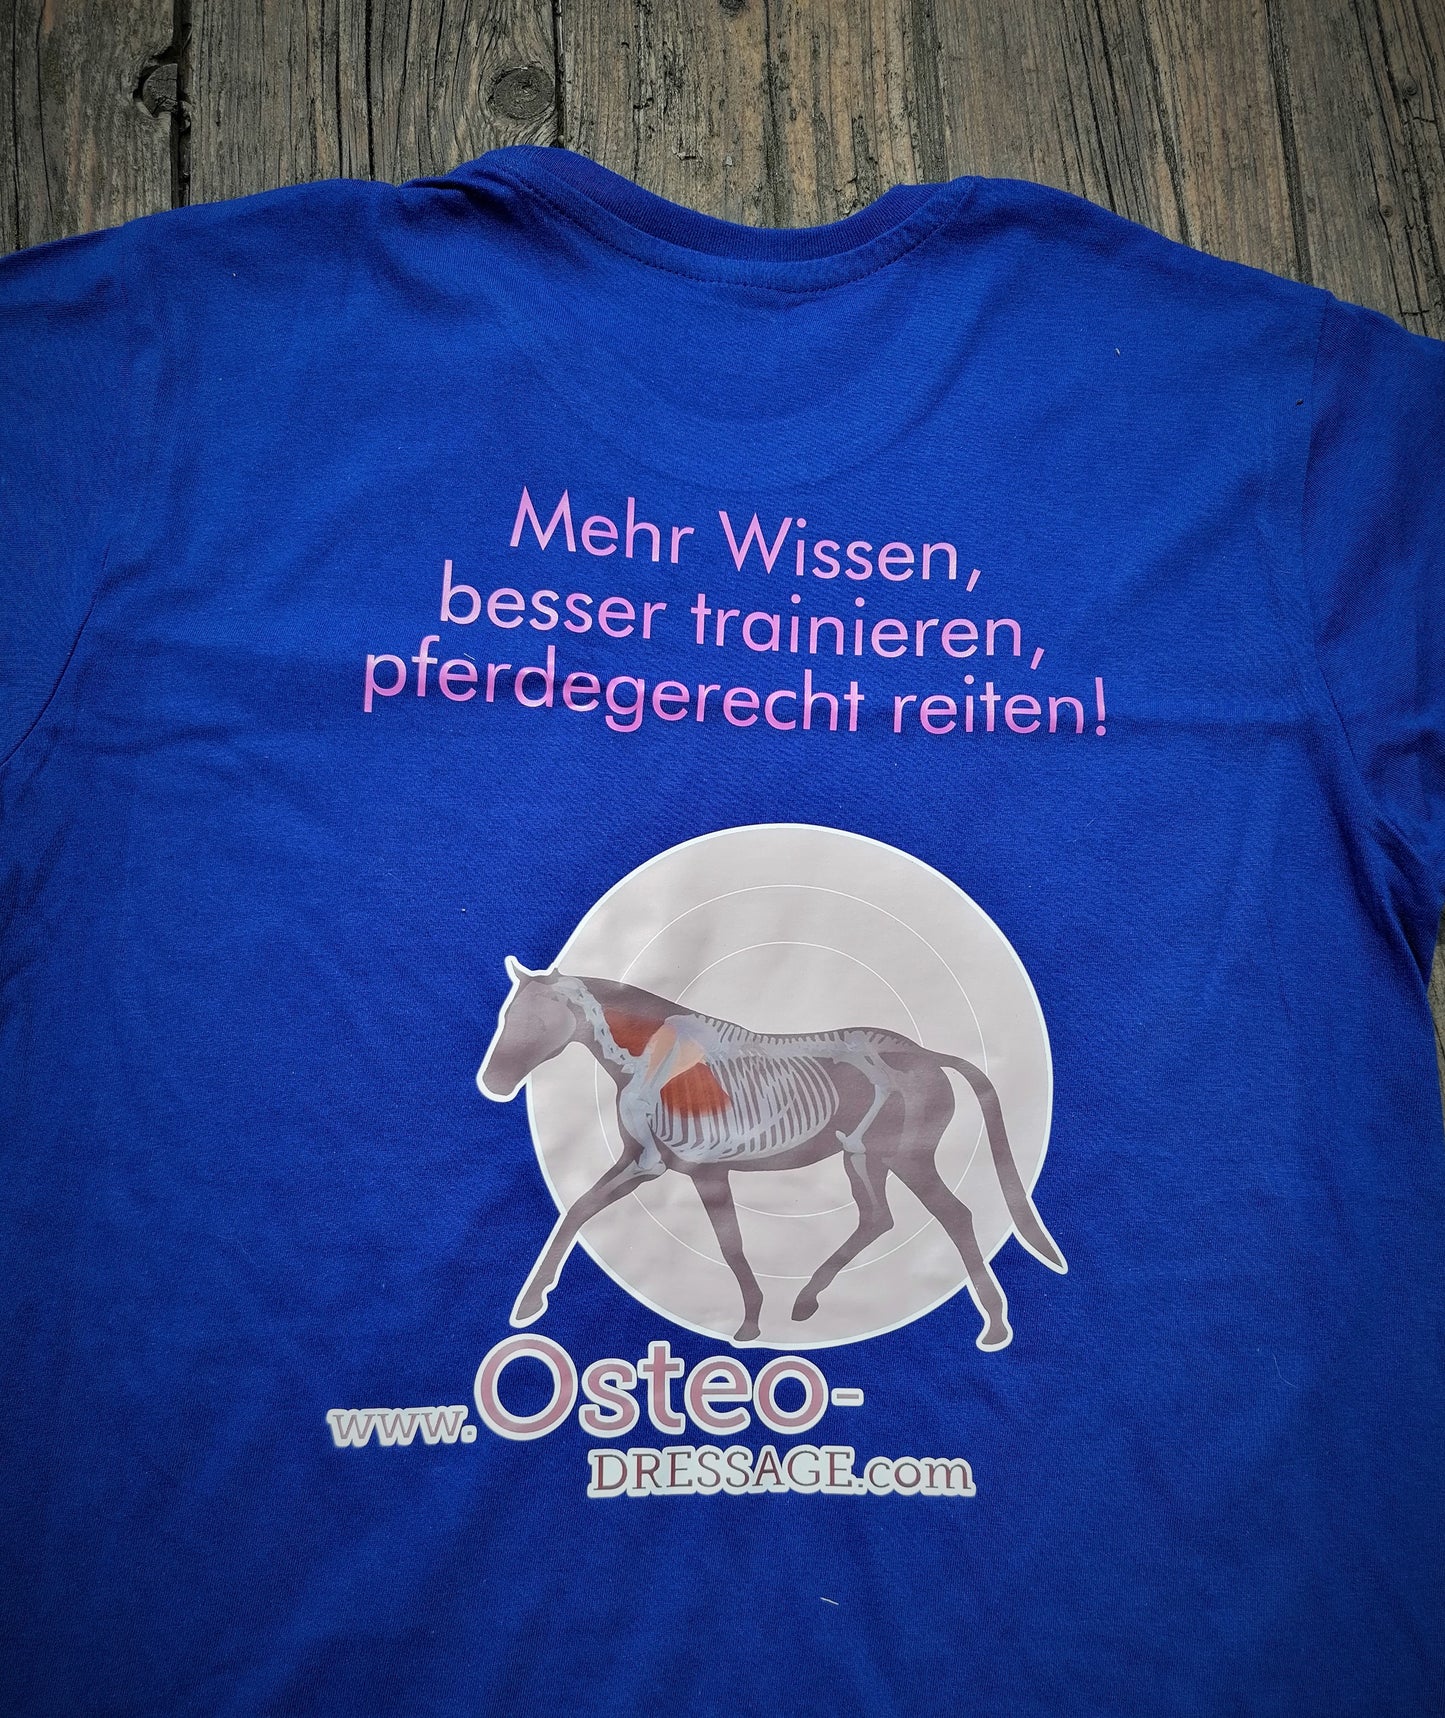 OsteoDressage T-Shirt "Mehr wissen,..."